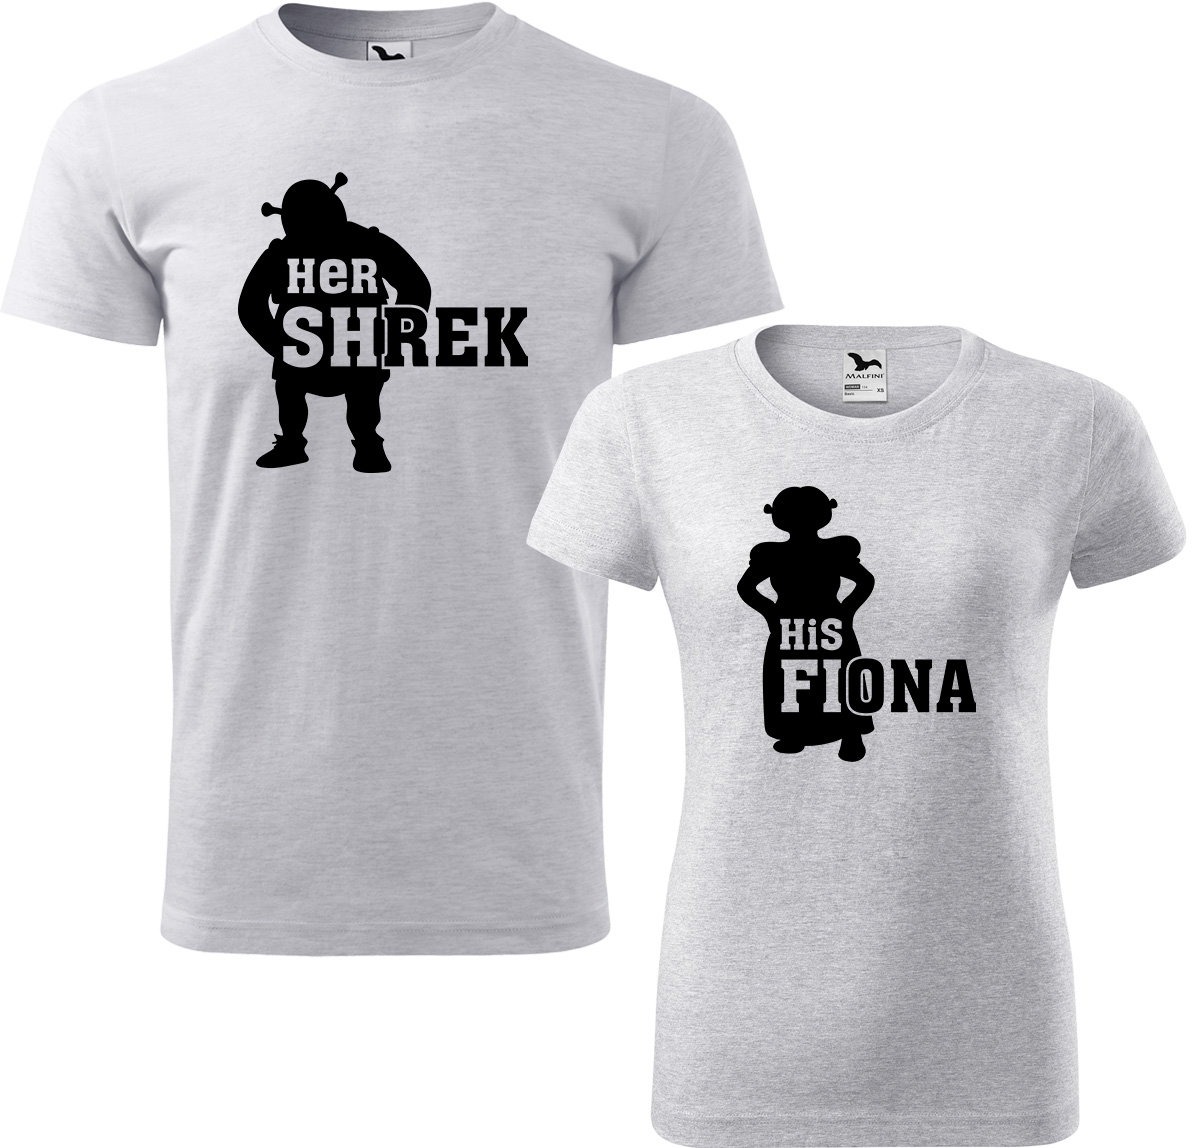 Trička pro páry - Shrek a Fiona Barva: Světle šedý melír (03), Velikost dámské tričko: 3XL, Velikost pánské tričko: 3XL